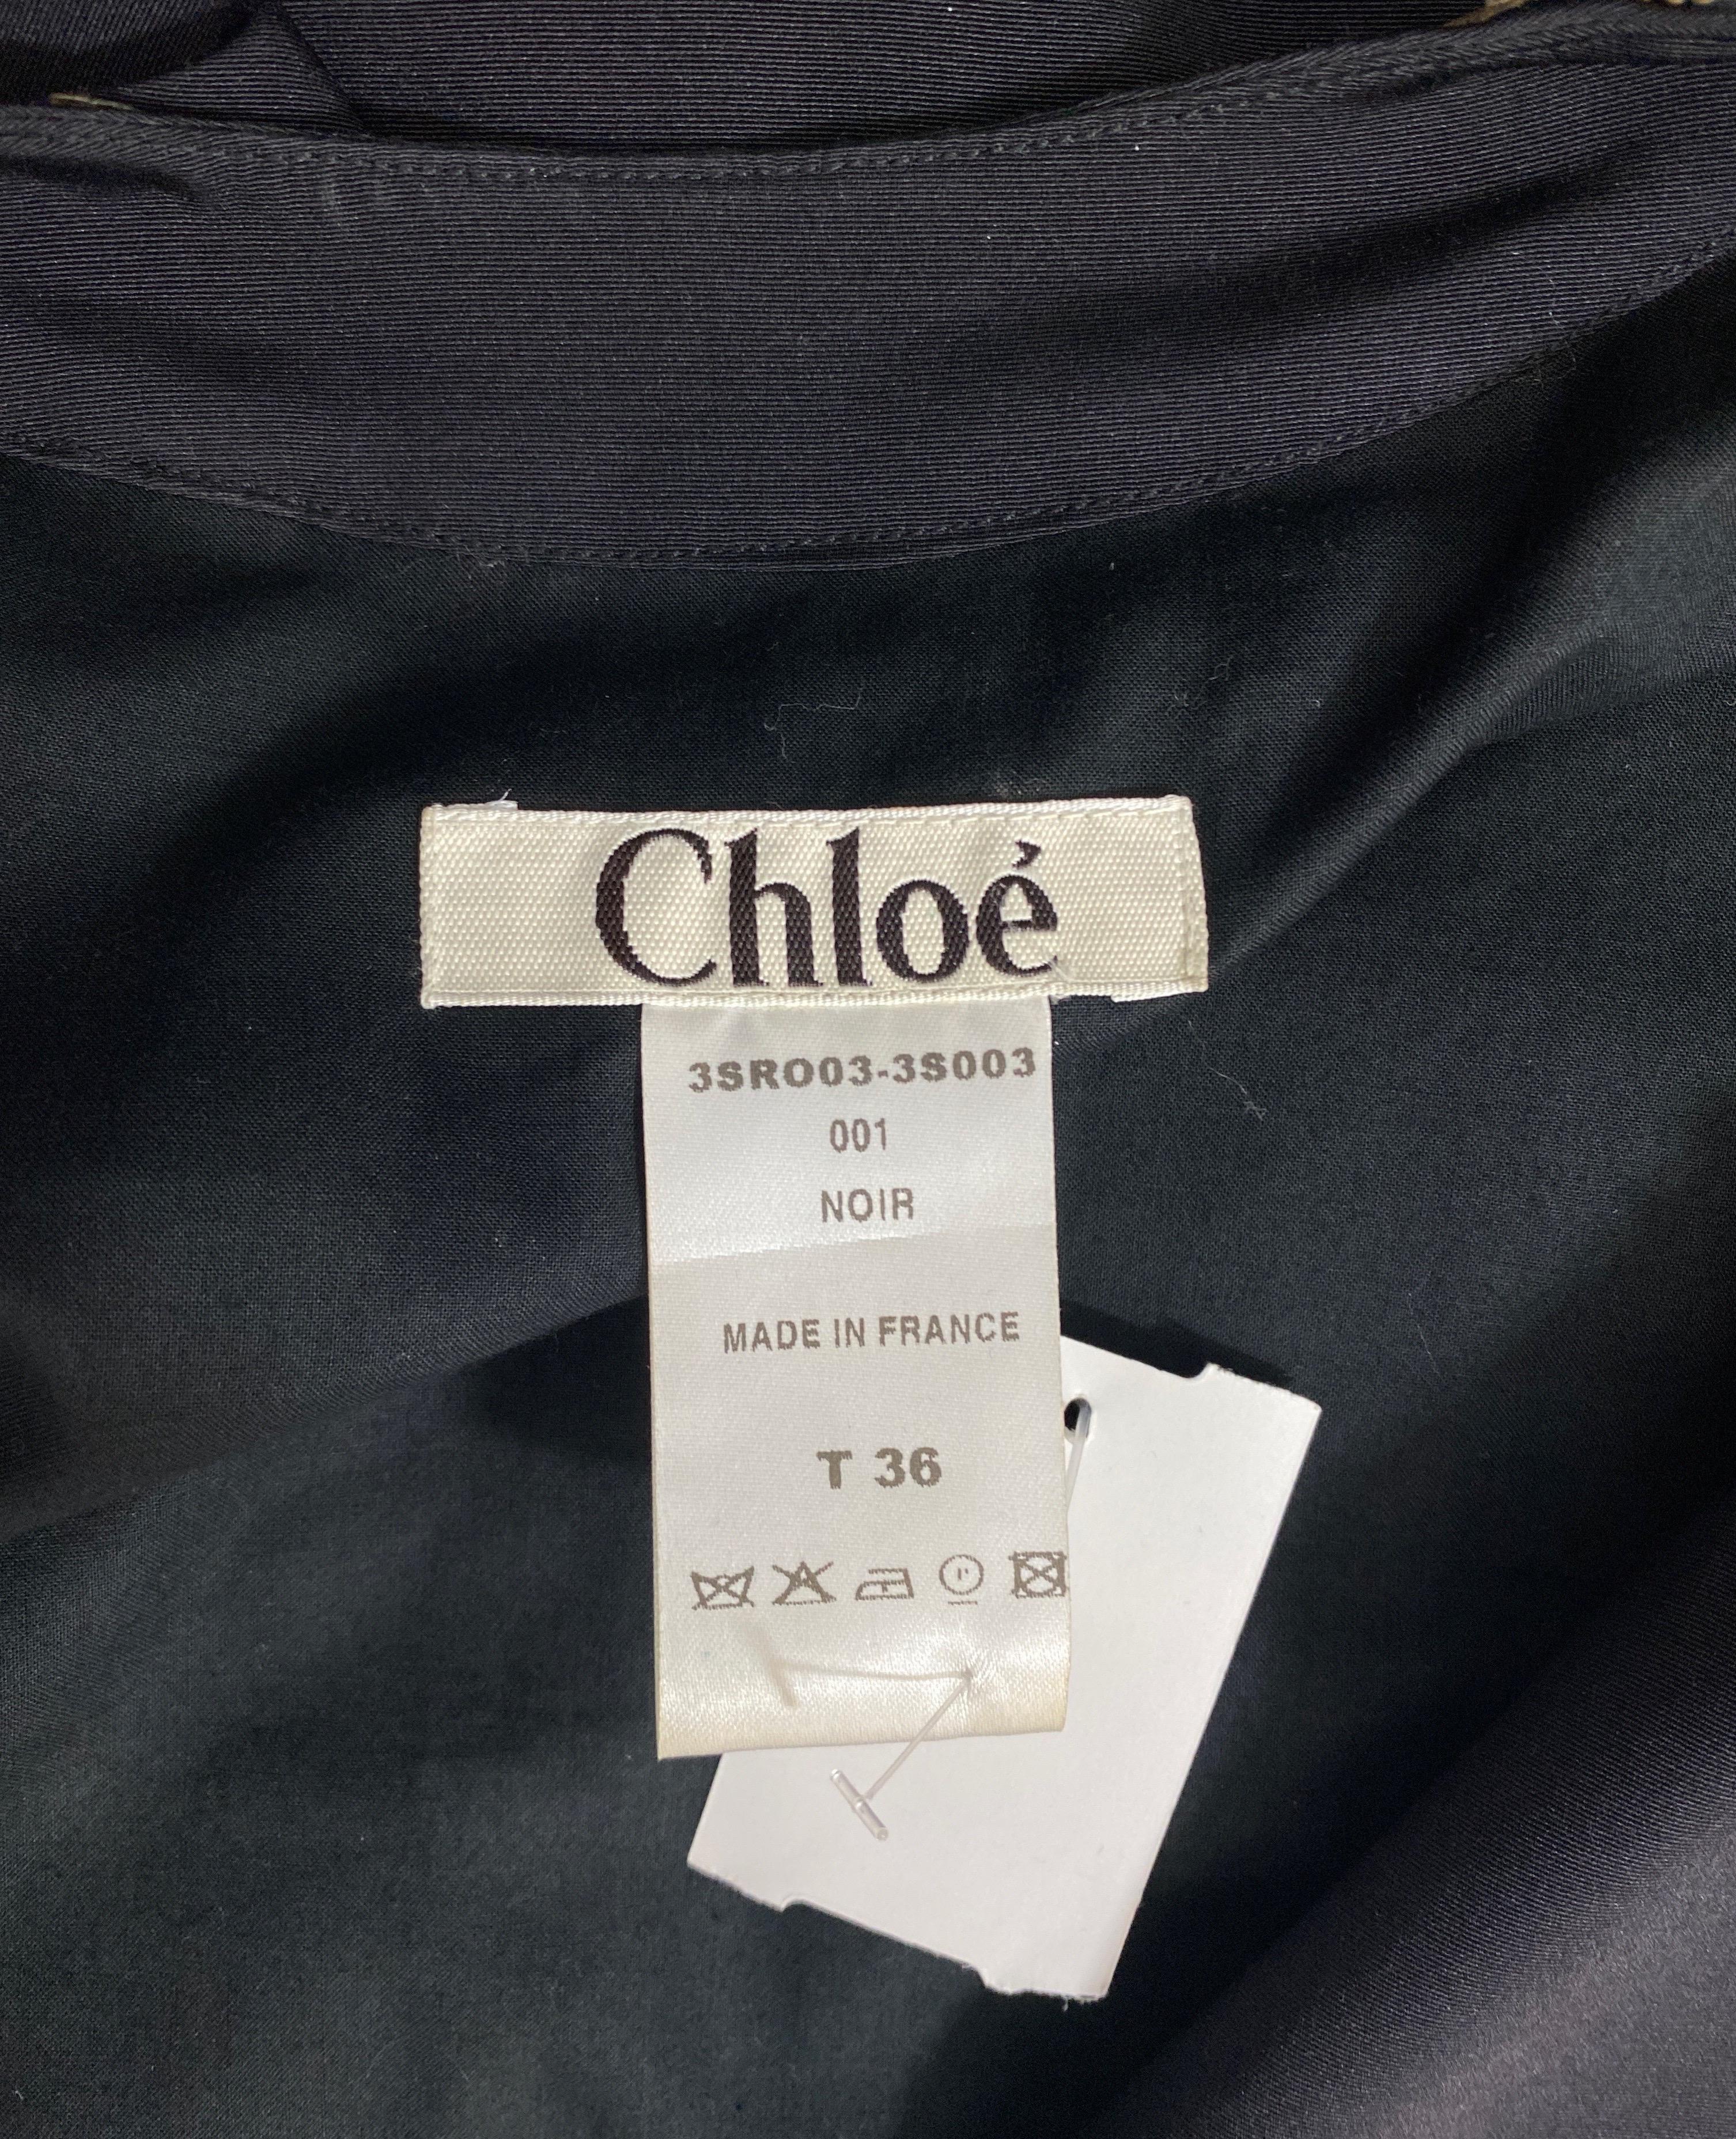 Chloe Spring 2003 Bronze Embellished Black Dress - Size 36 For Sale 10